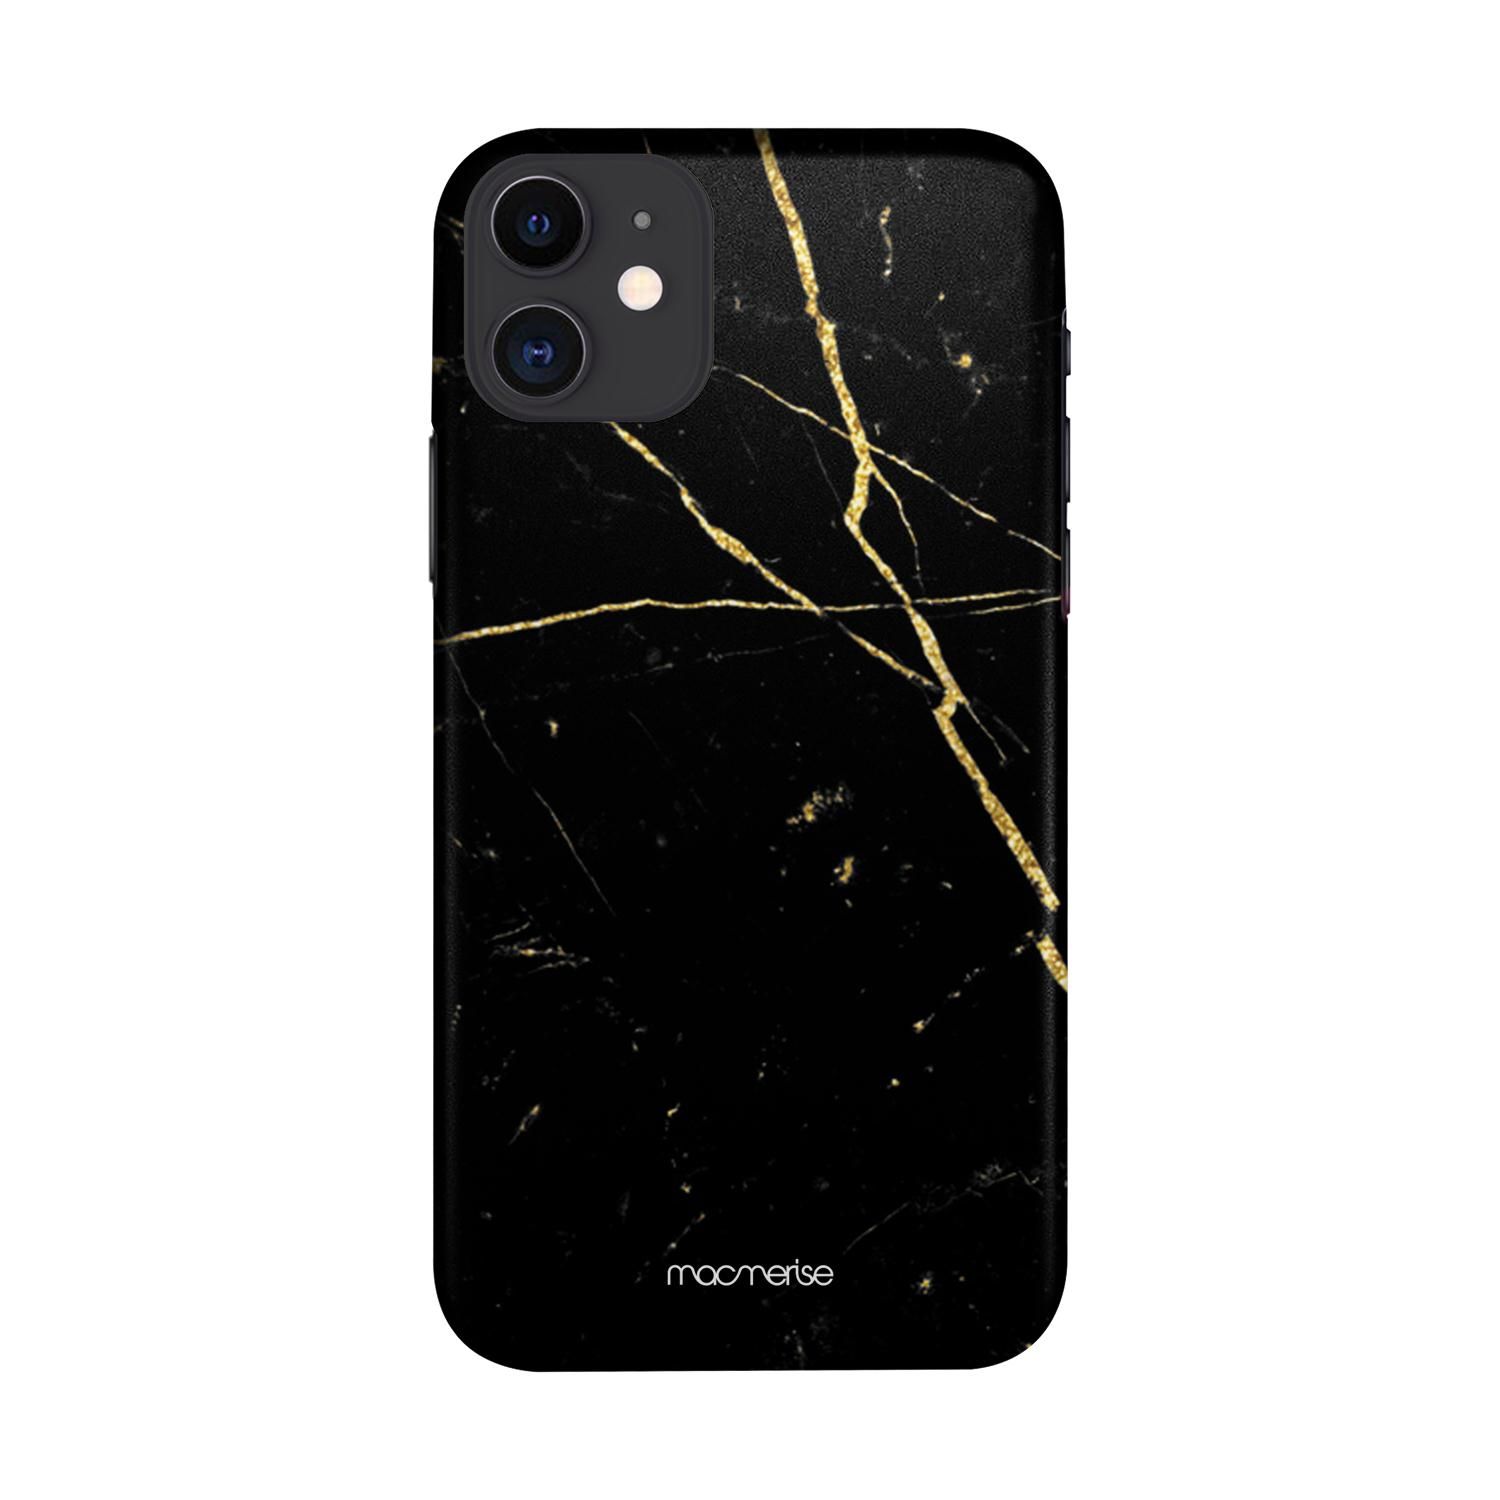 Buy Marble Black Onyx - Sleek Phone Case for iPhone 11 Online